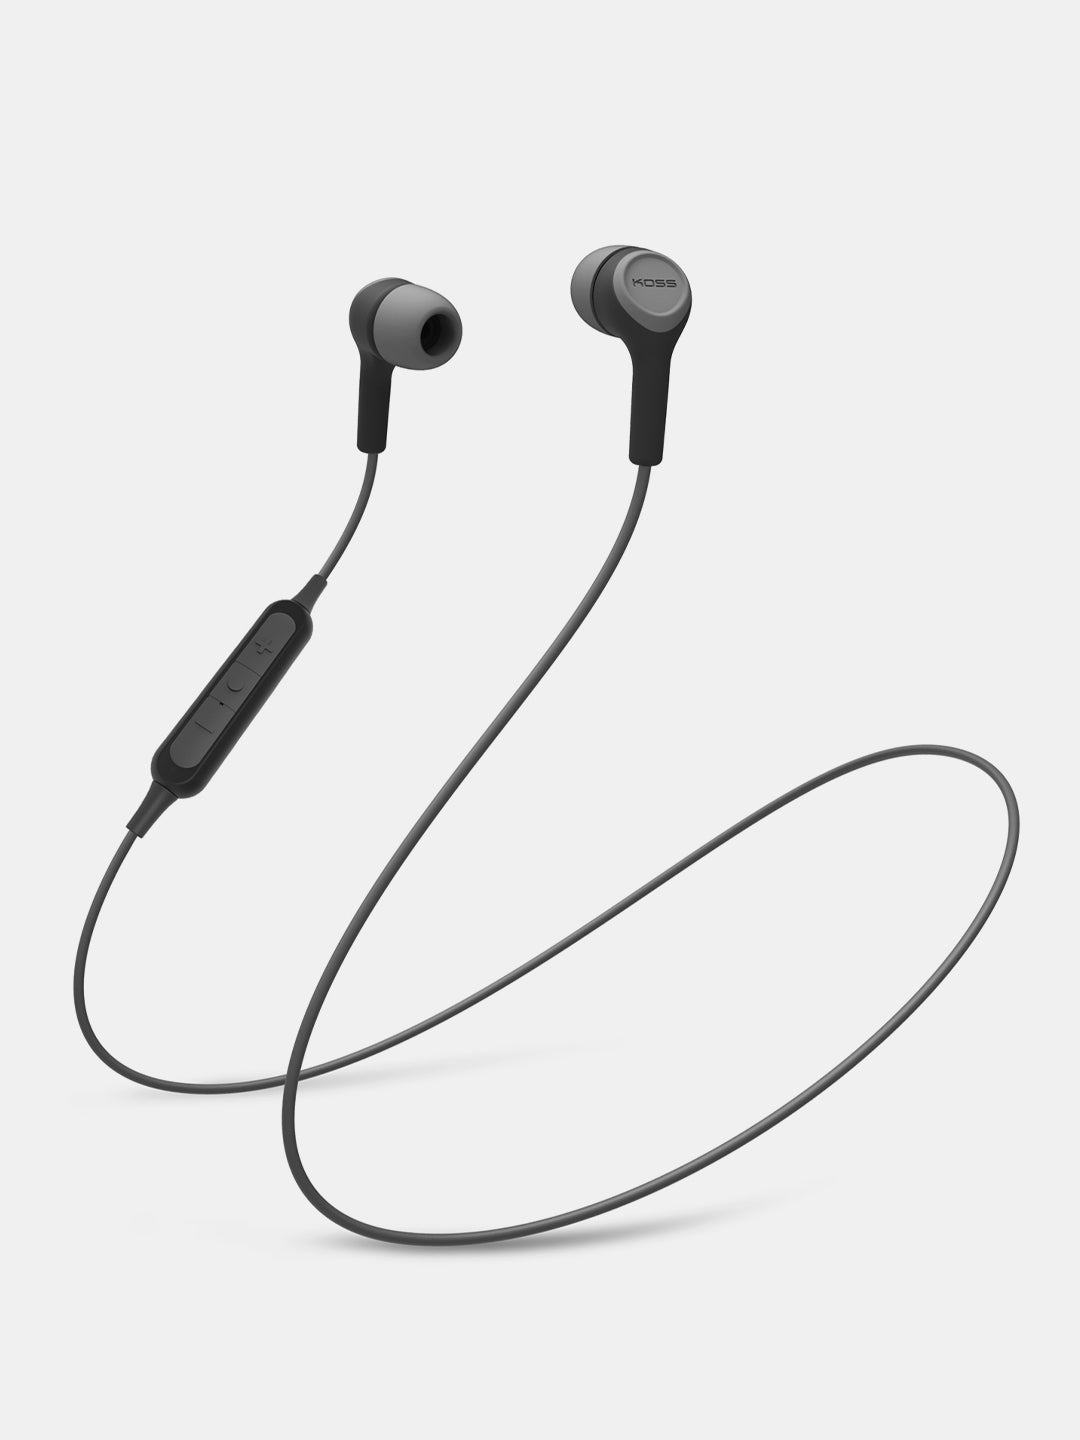 Koss BT115i - Bluetooth In-Ear Wireless Earphones - Black